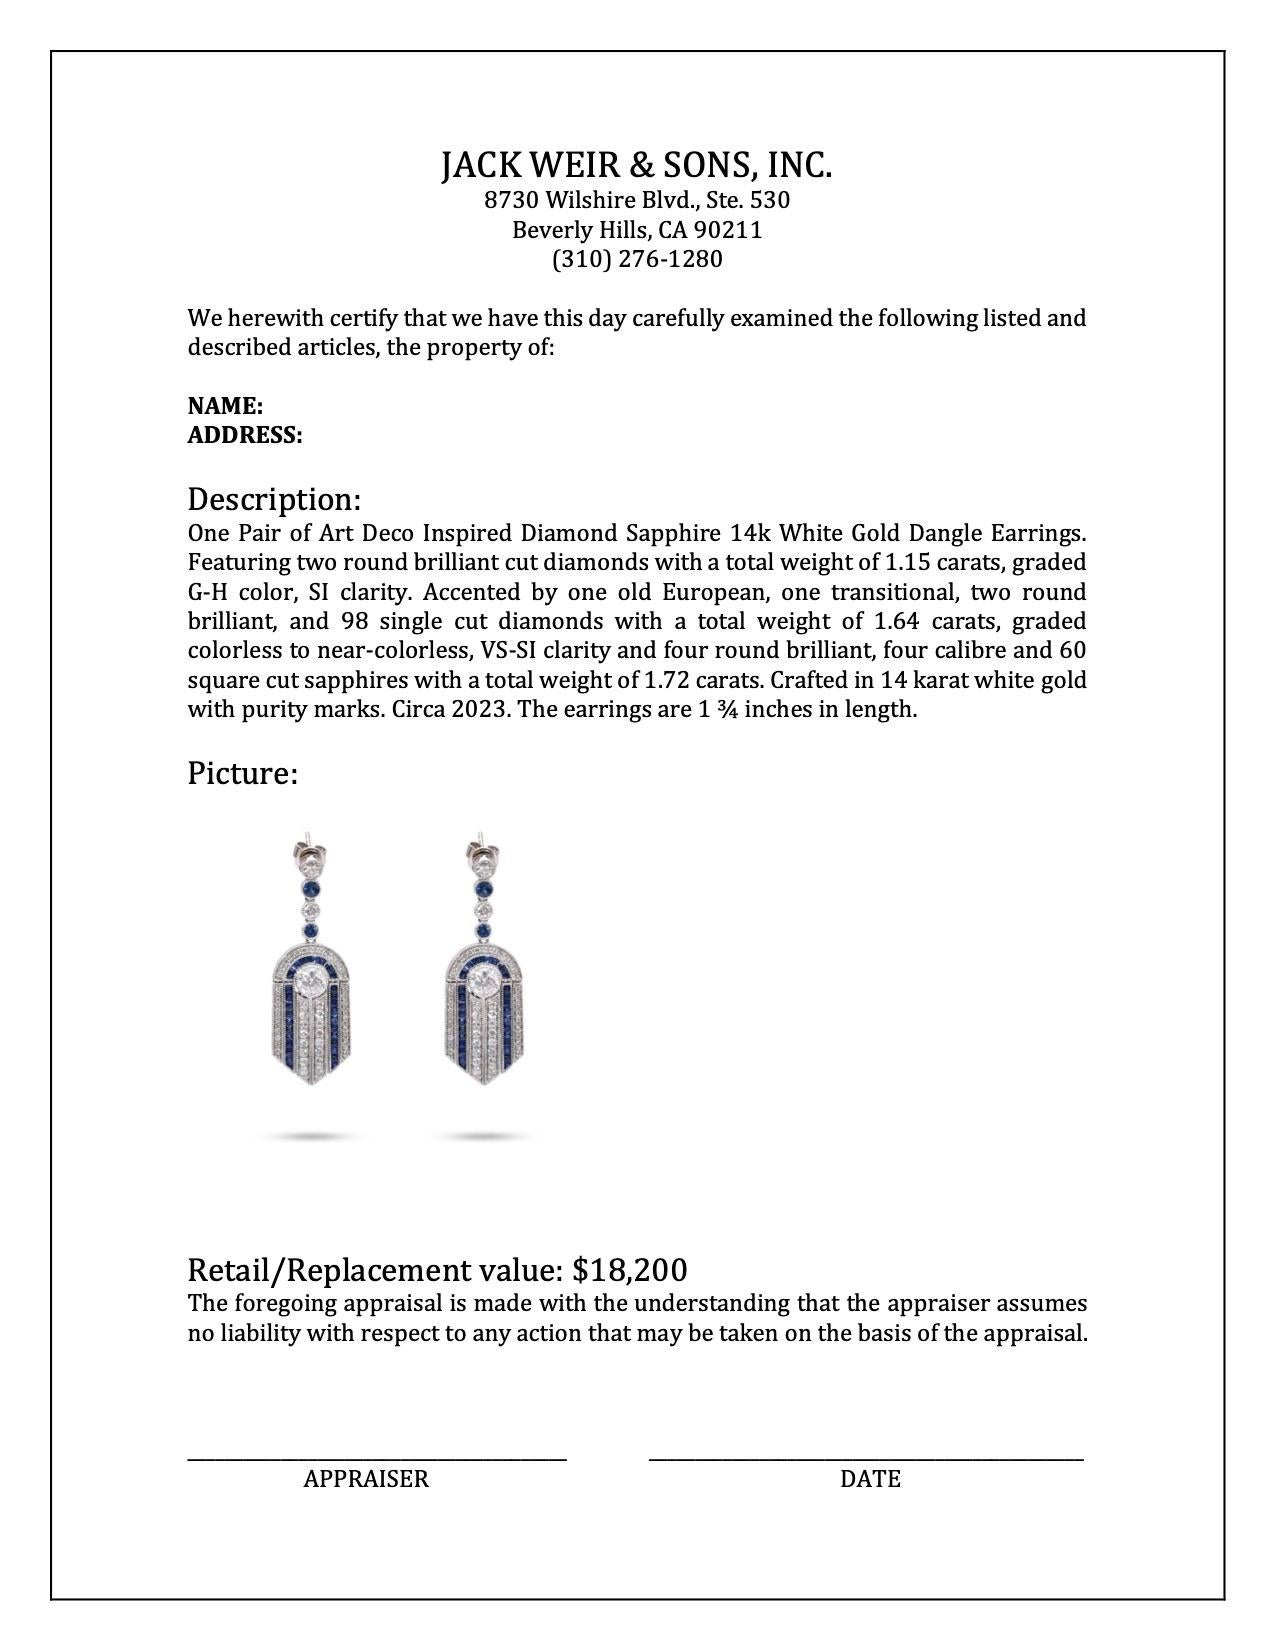 Women's or Men's Art Deco Inspired Diamond Sapphire 14k White Gold Dangle Earrings For Sale